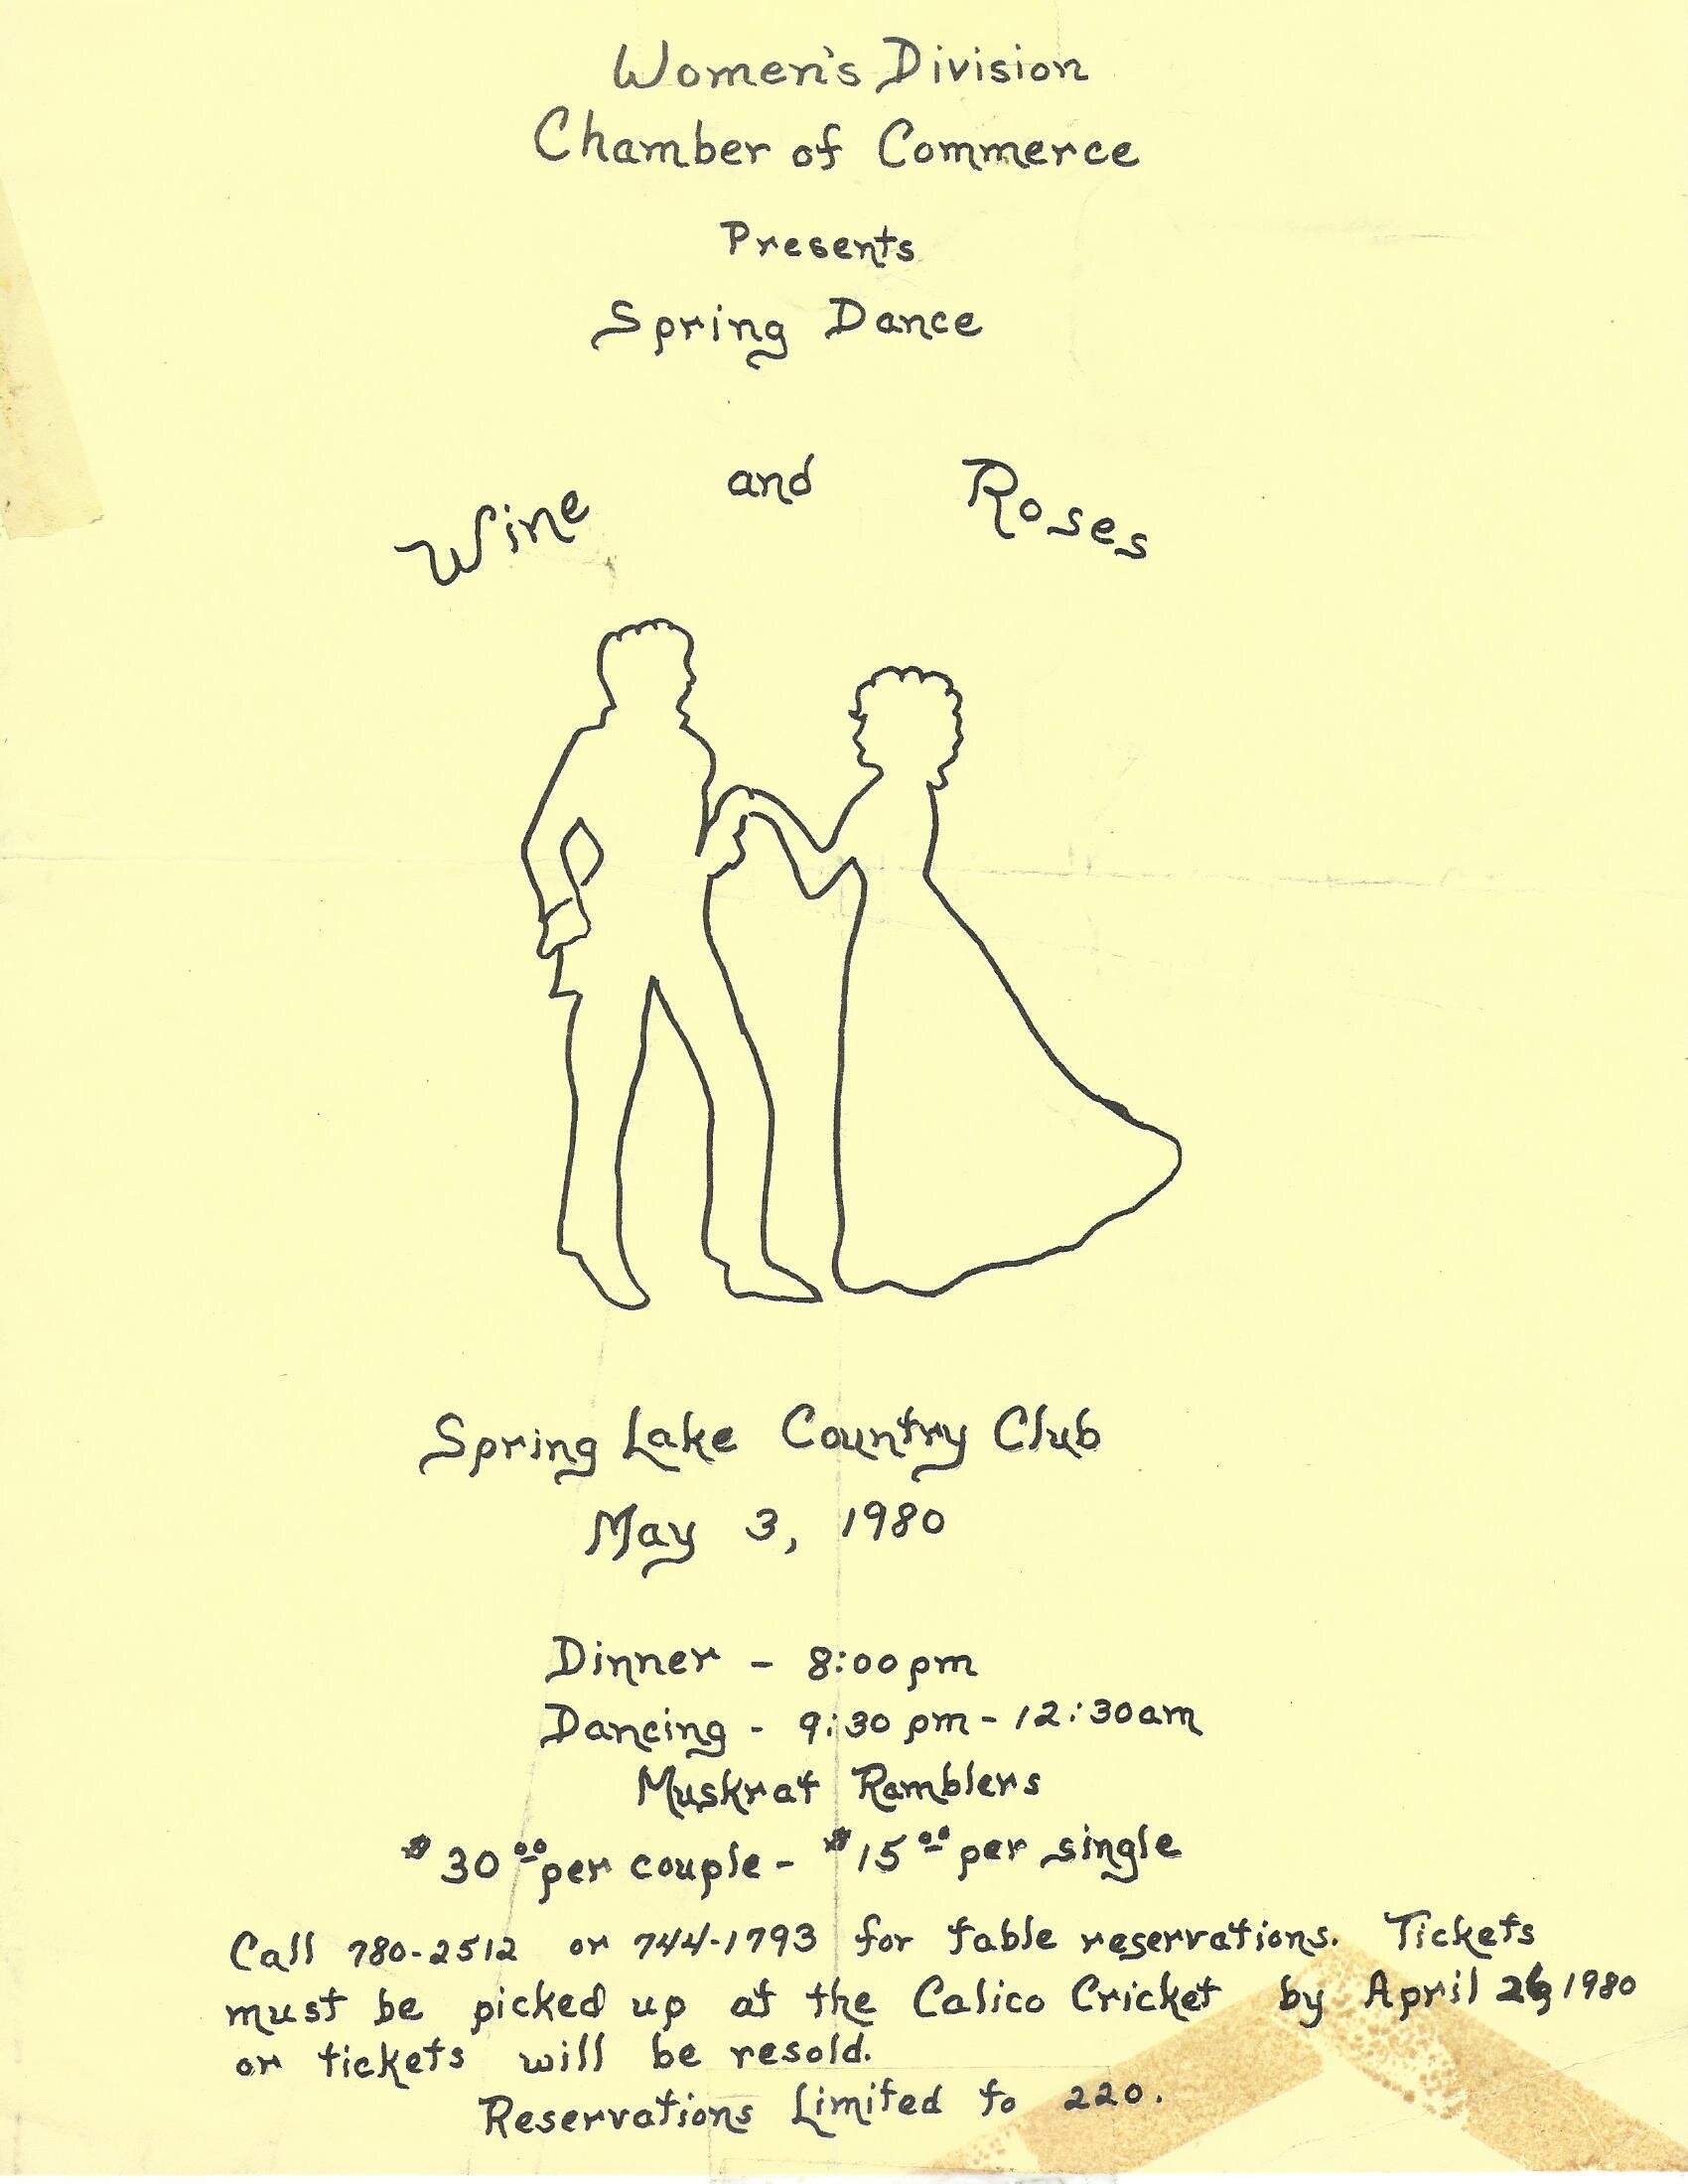 Wine & Roses Spring Dance, 1980 flier.jpg